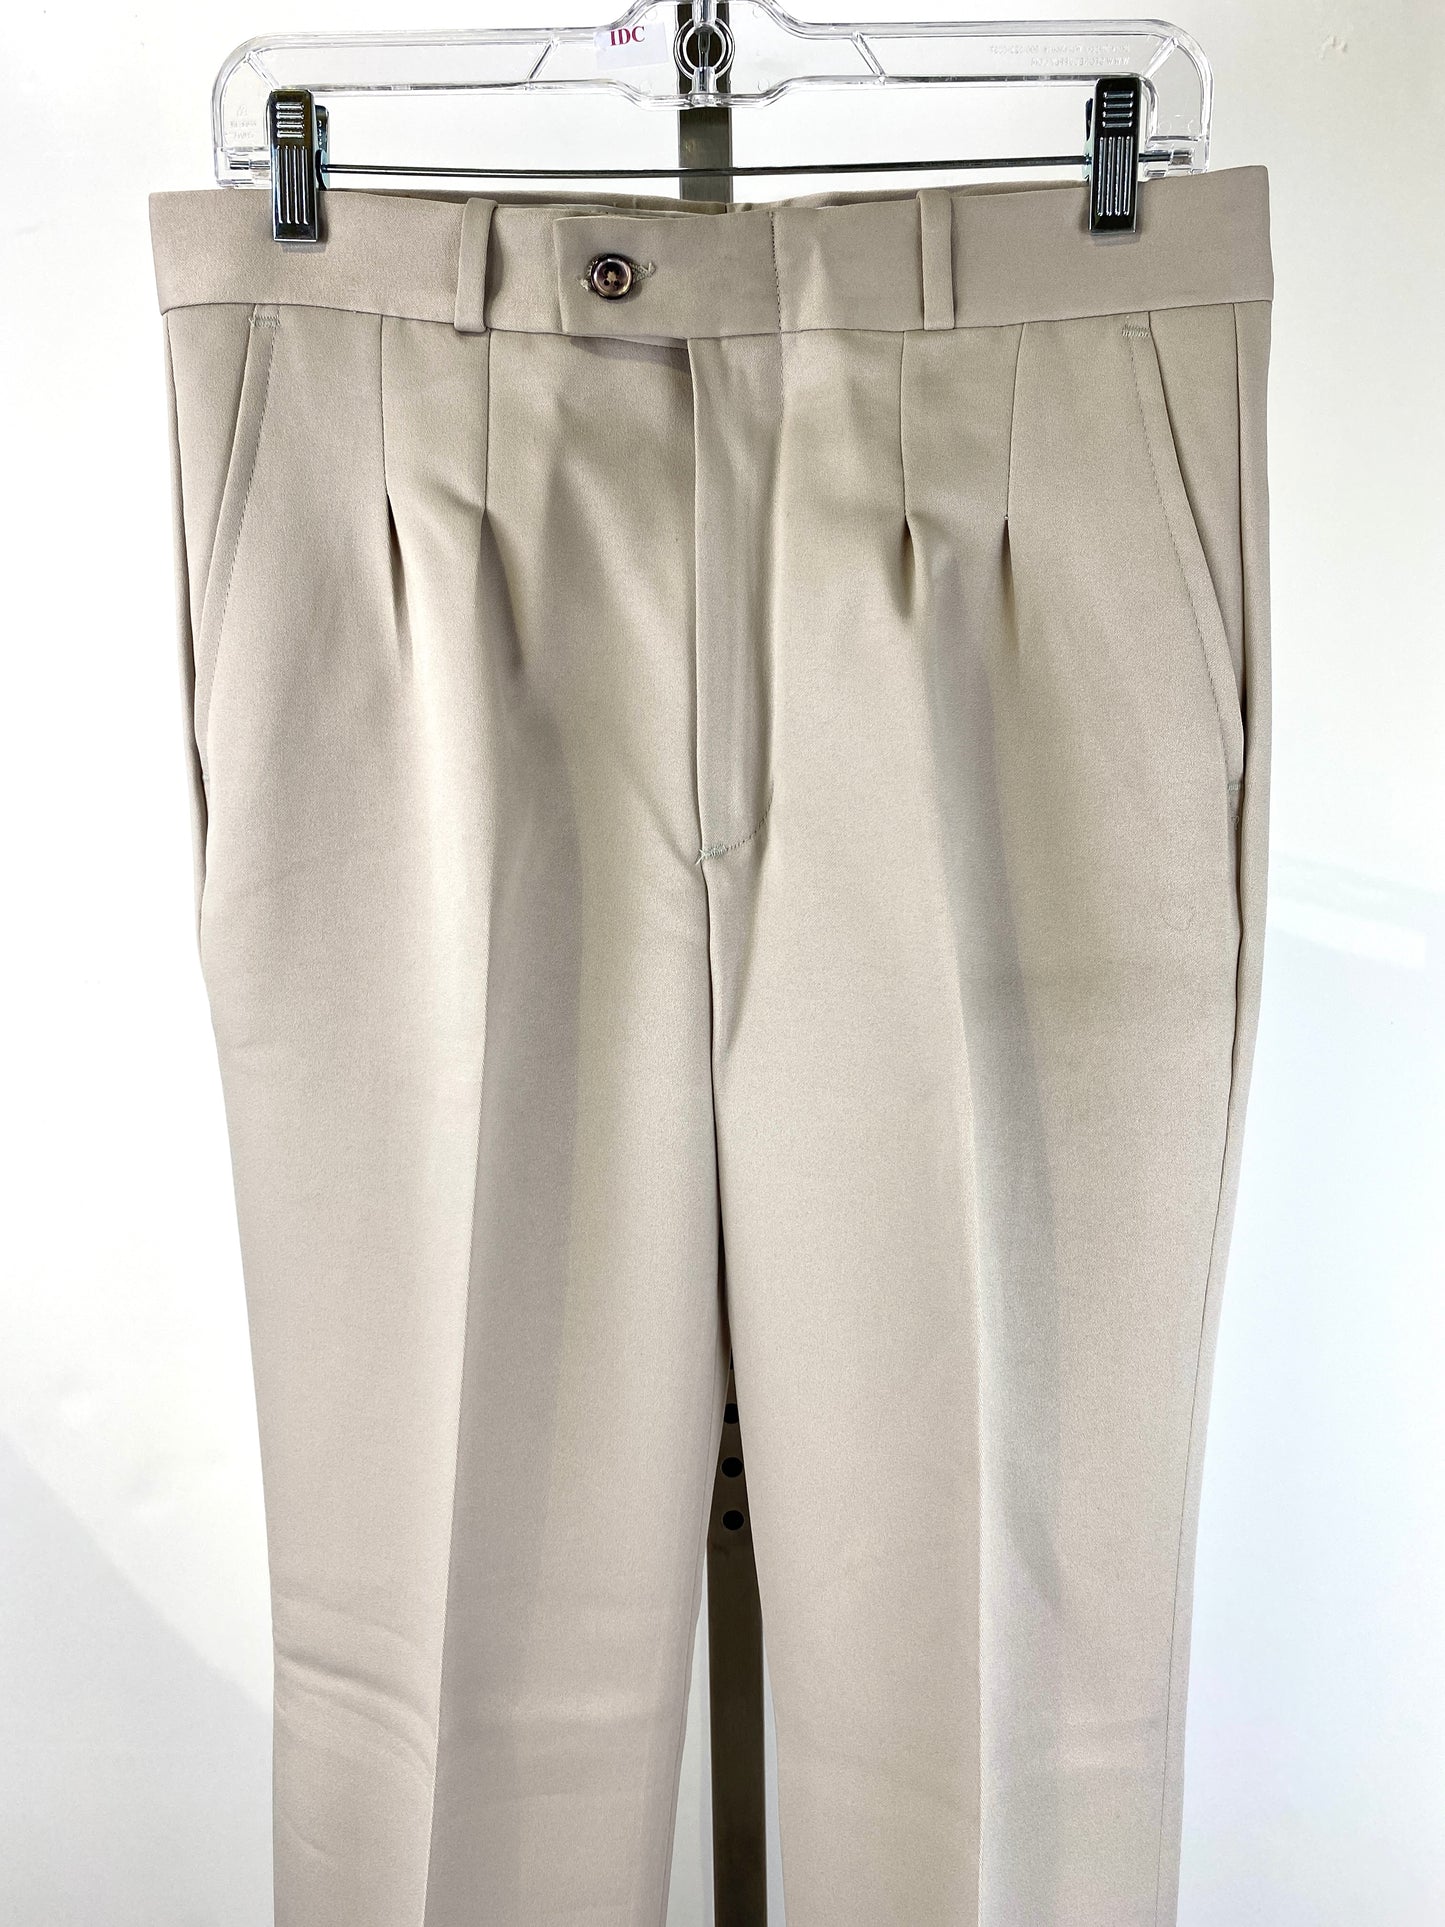 Vintage 1970s Deadstock Straight-Leg Polyester Trouser's, Men's Beige Slacks, NOS